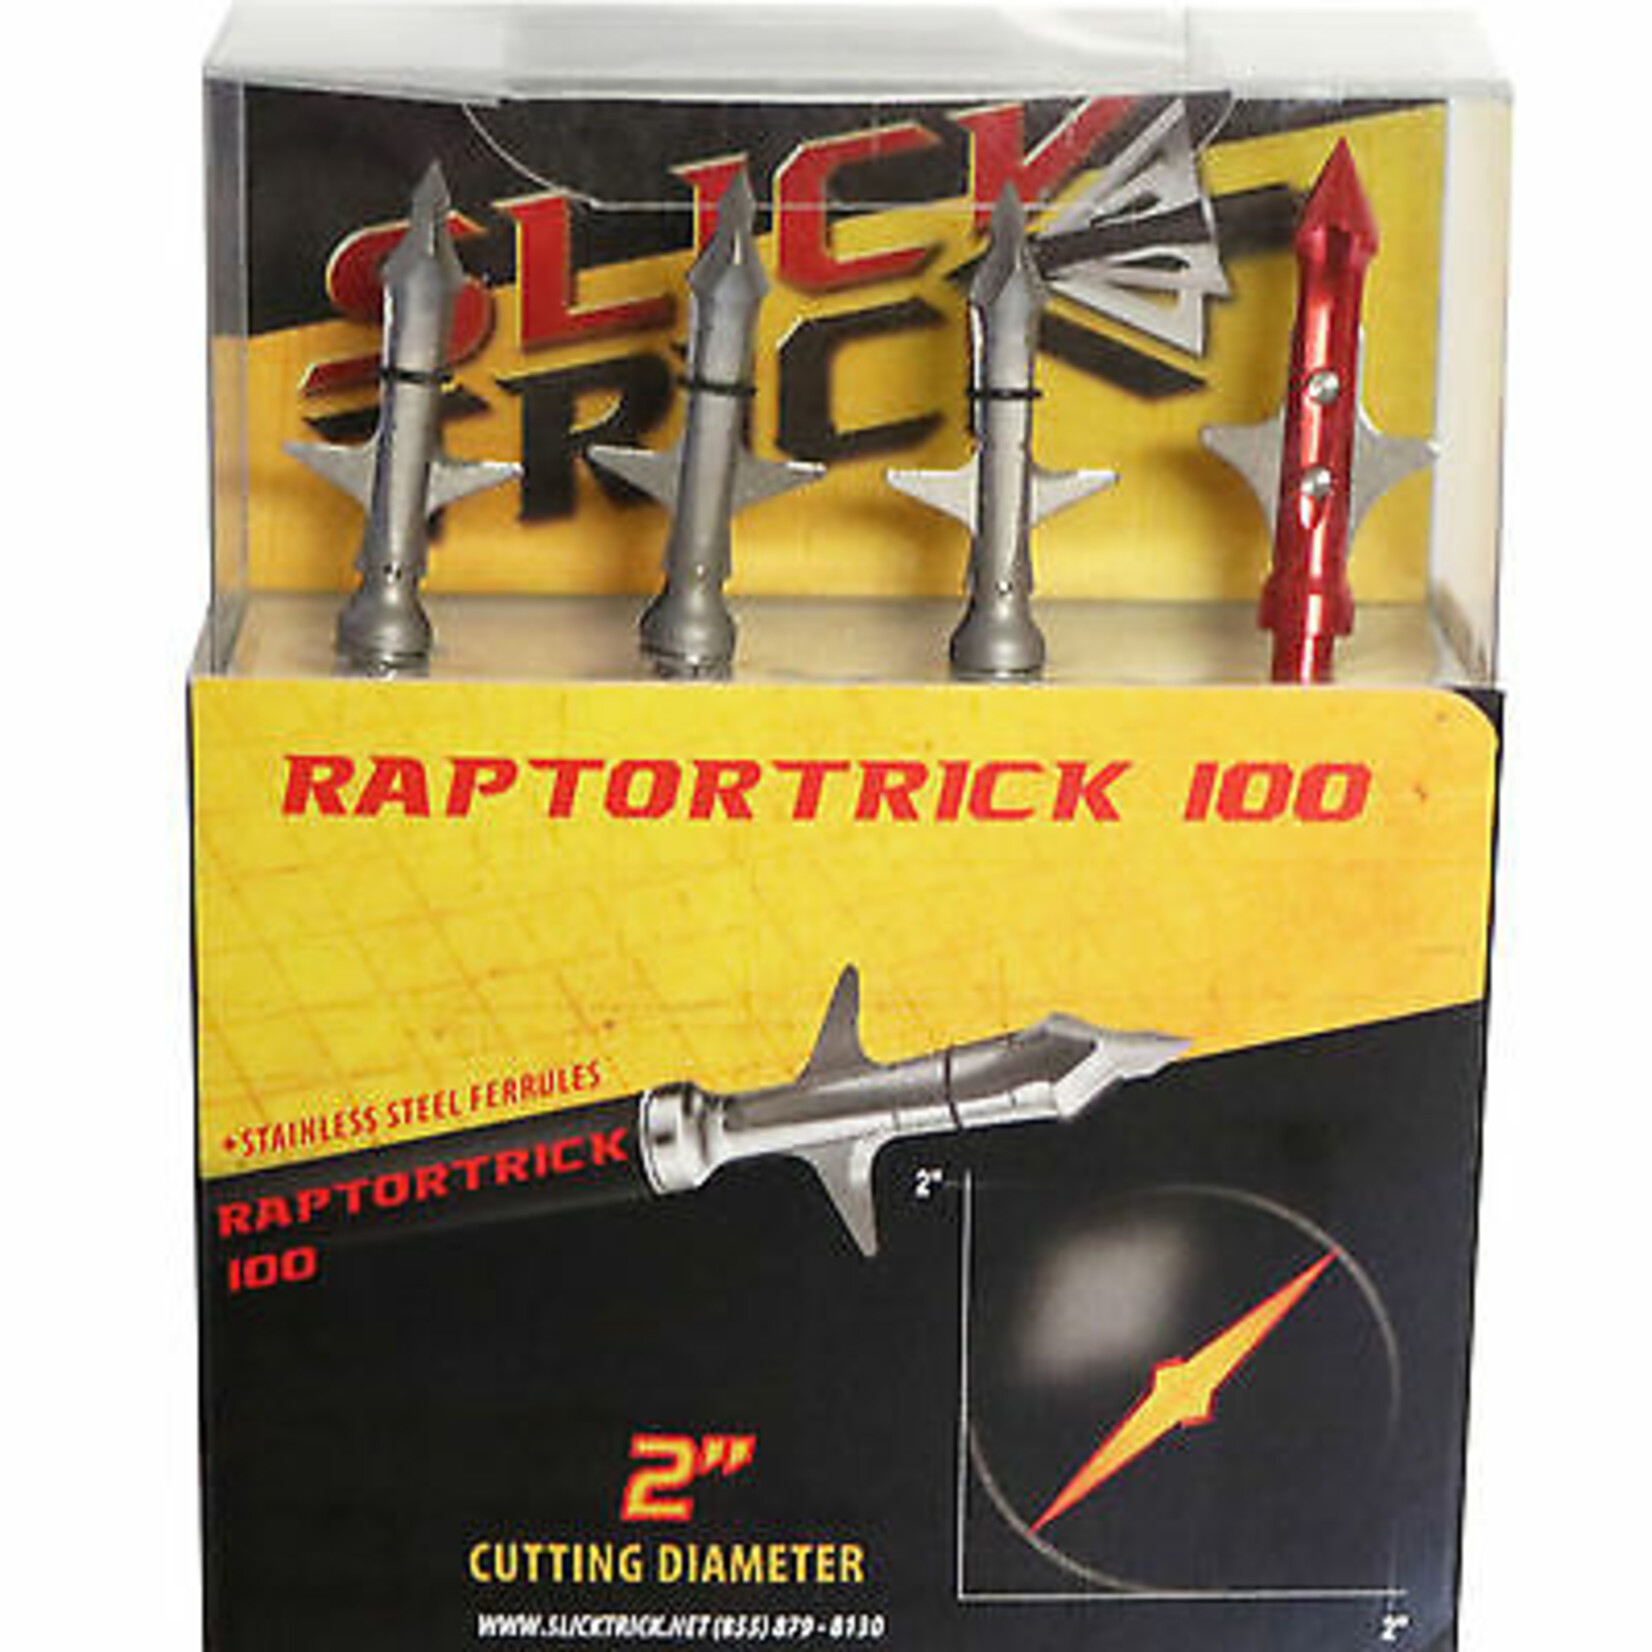 Slick Trick Raptor Trick Mechanical Broadhead, 2 Blade, 2", 100gr, 3pk